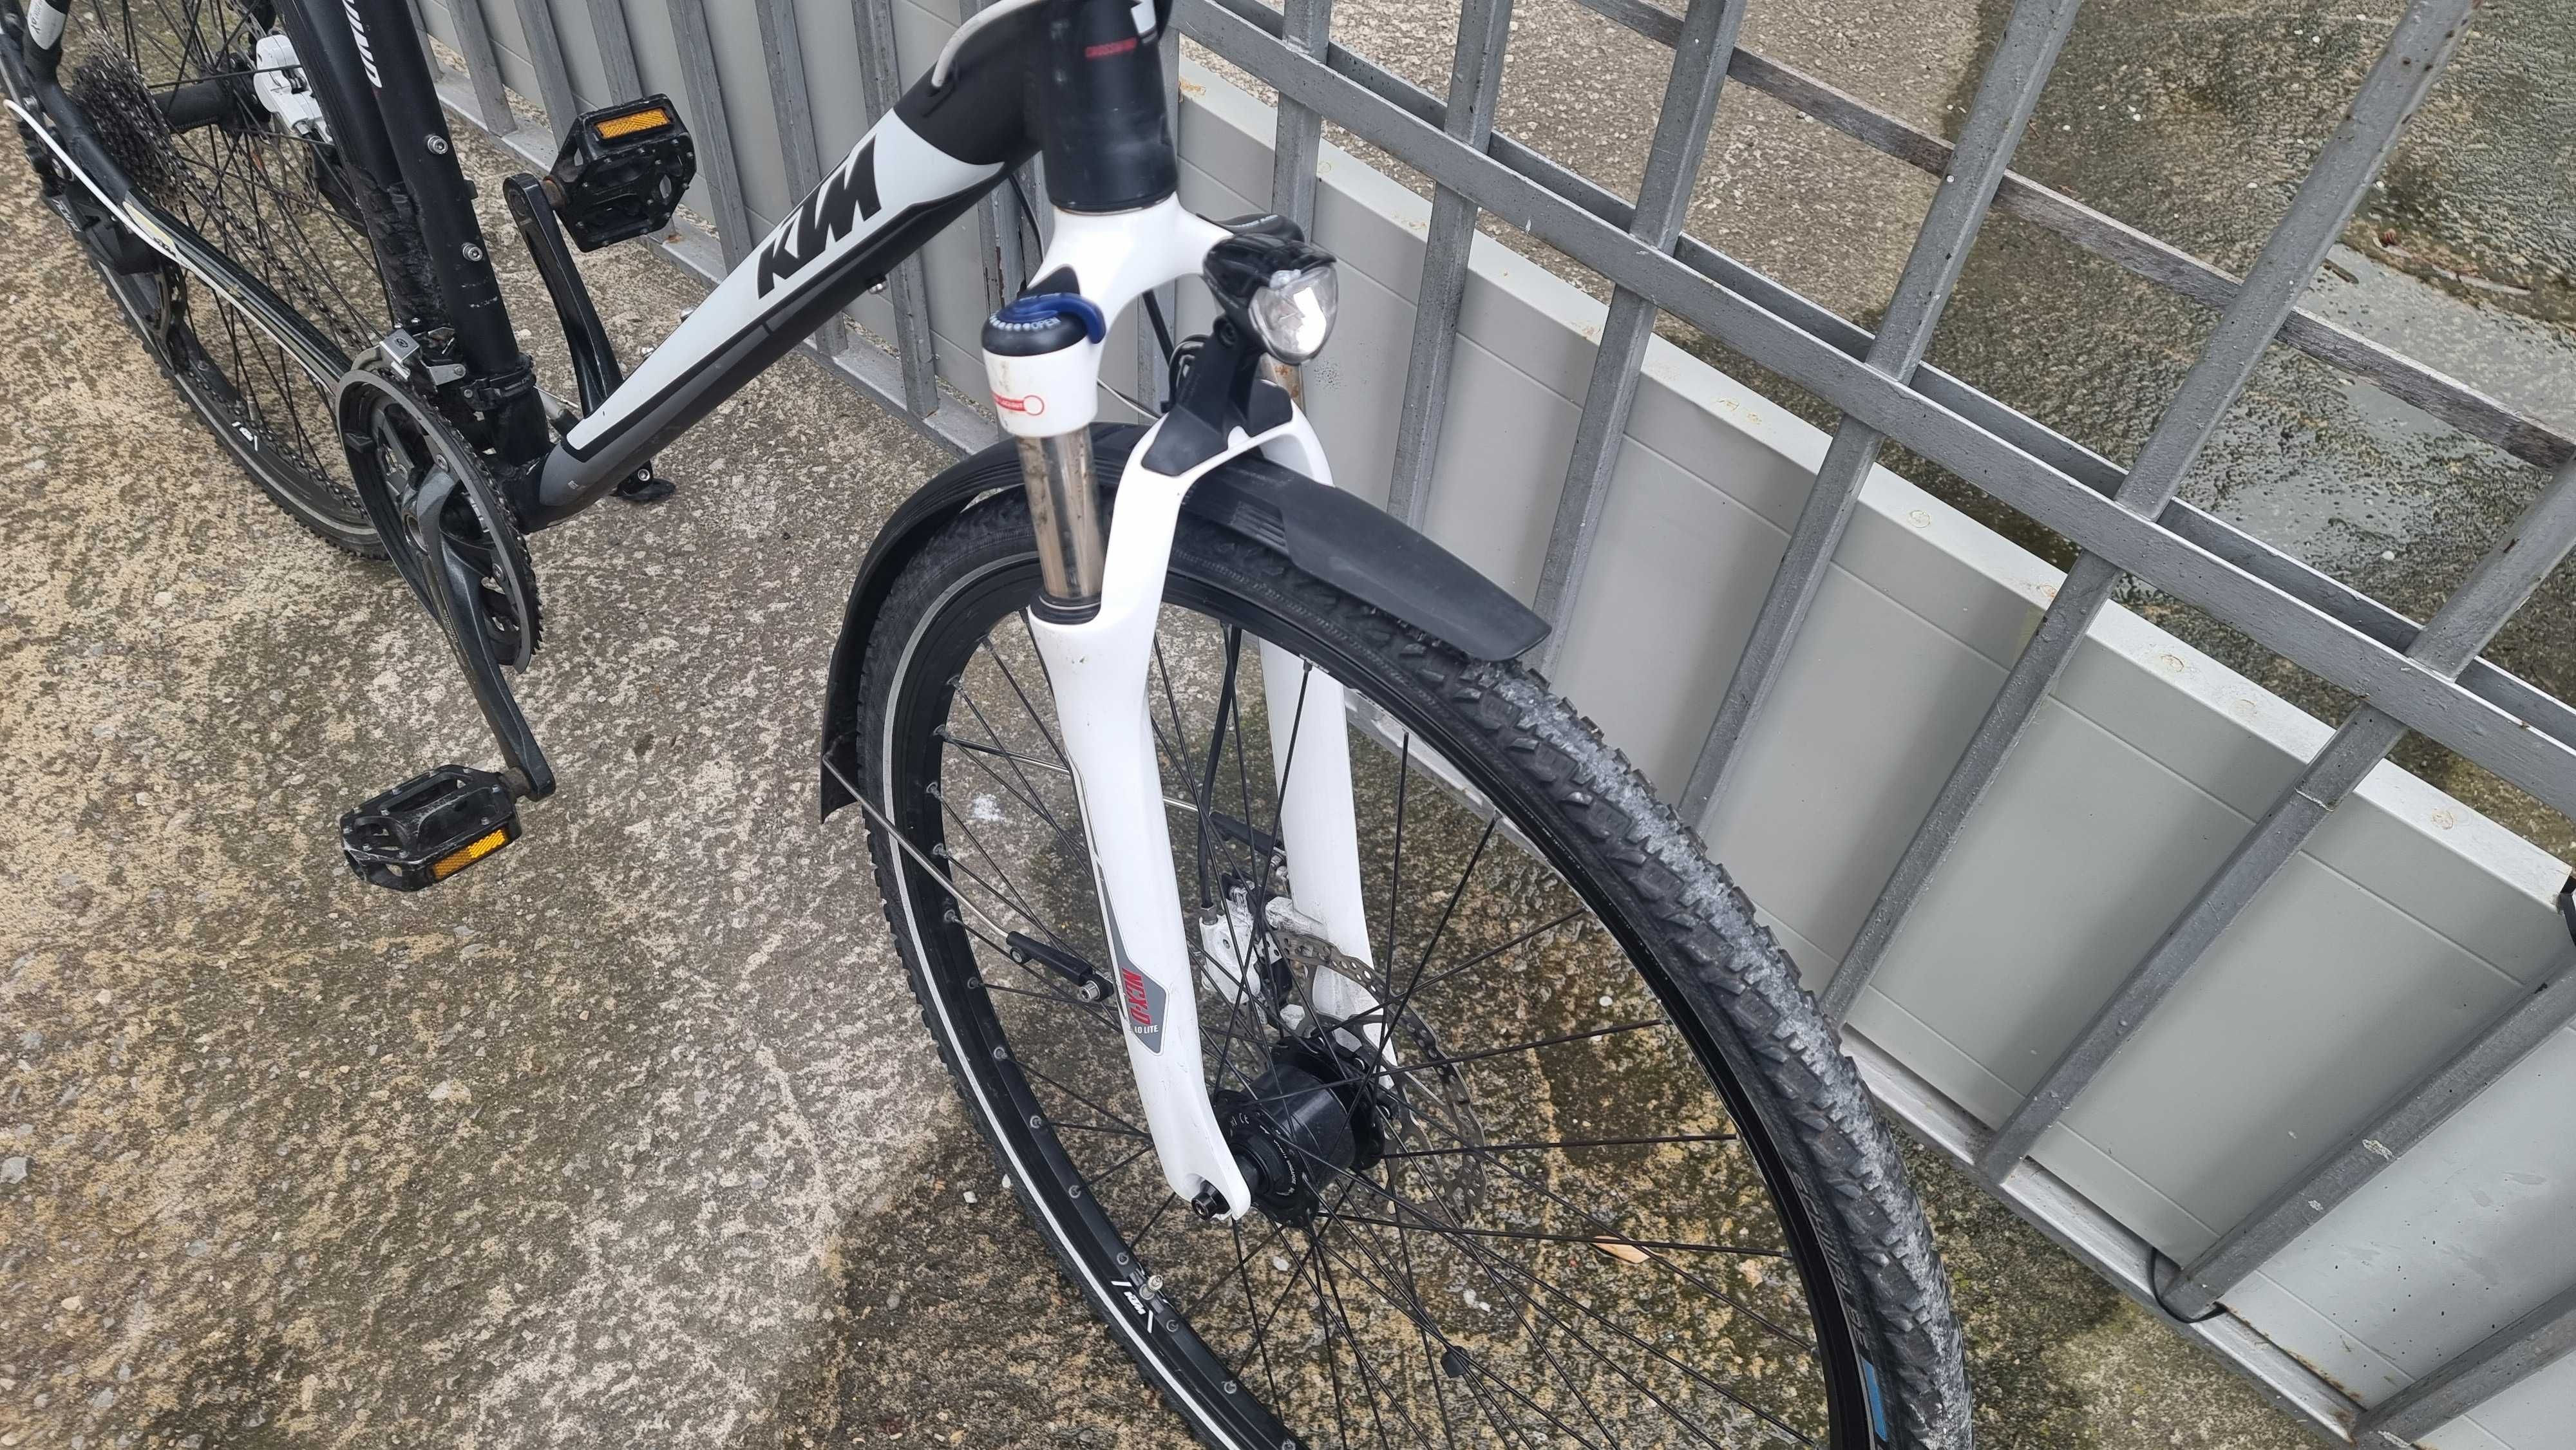 Хидравлика-алуминиев велосипед 28 цола KTM-шест месеца гаранция